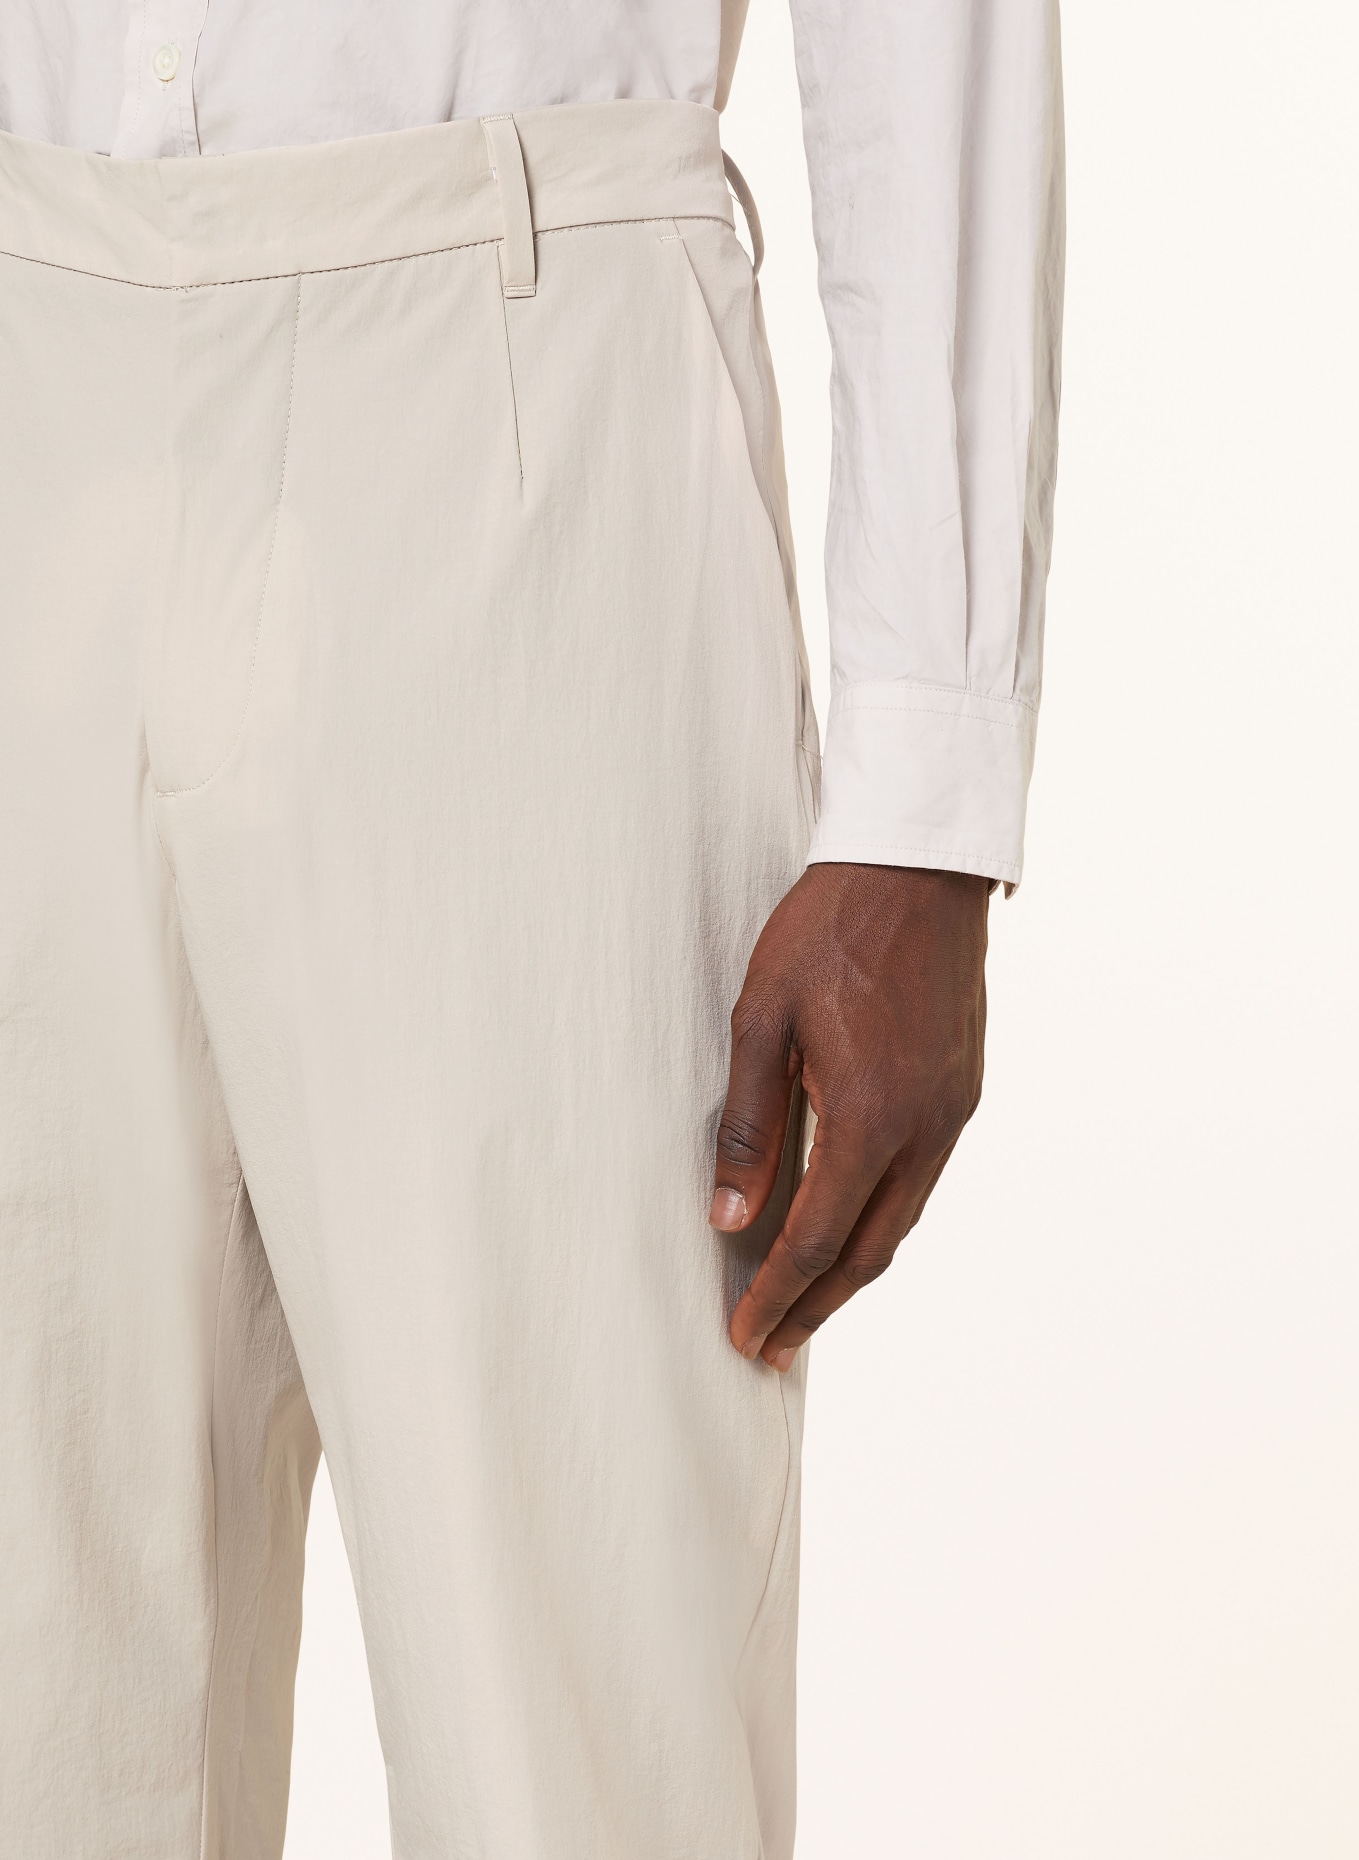 NORSE PROJECTS Suit trousers AAREN regular fit, Color: 0920 Light Khaki (Image 6)